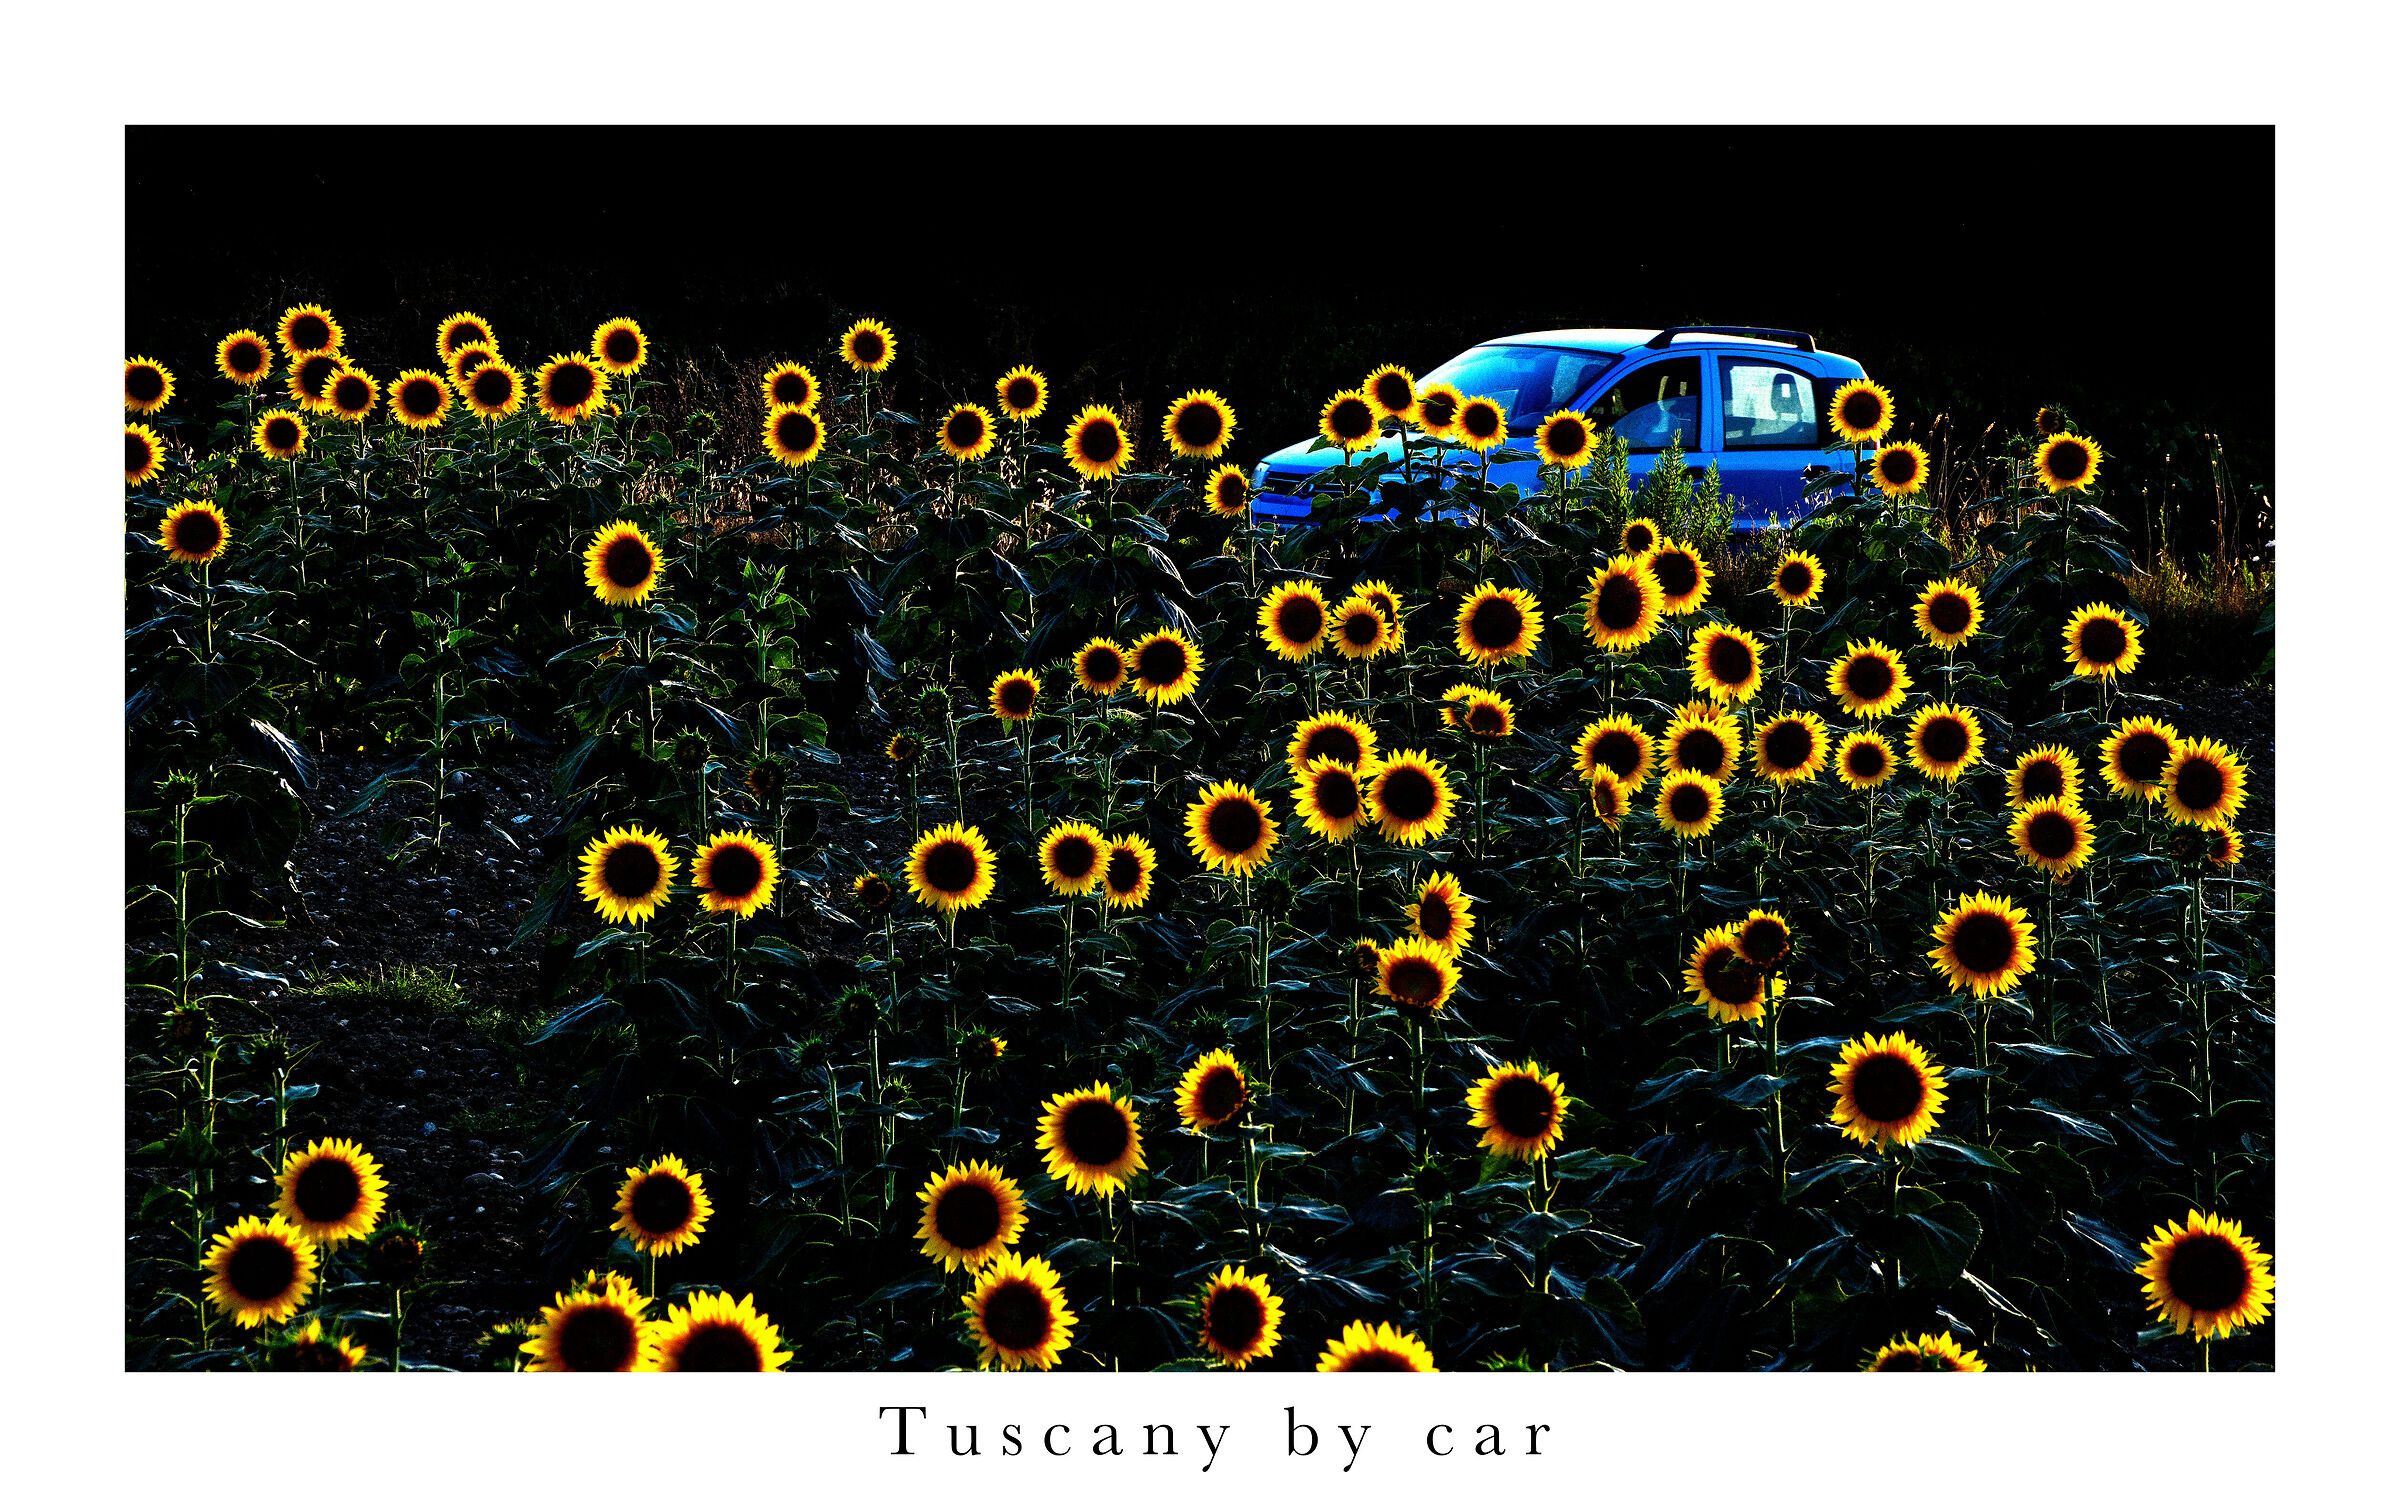 Tuscany by car...